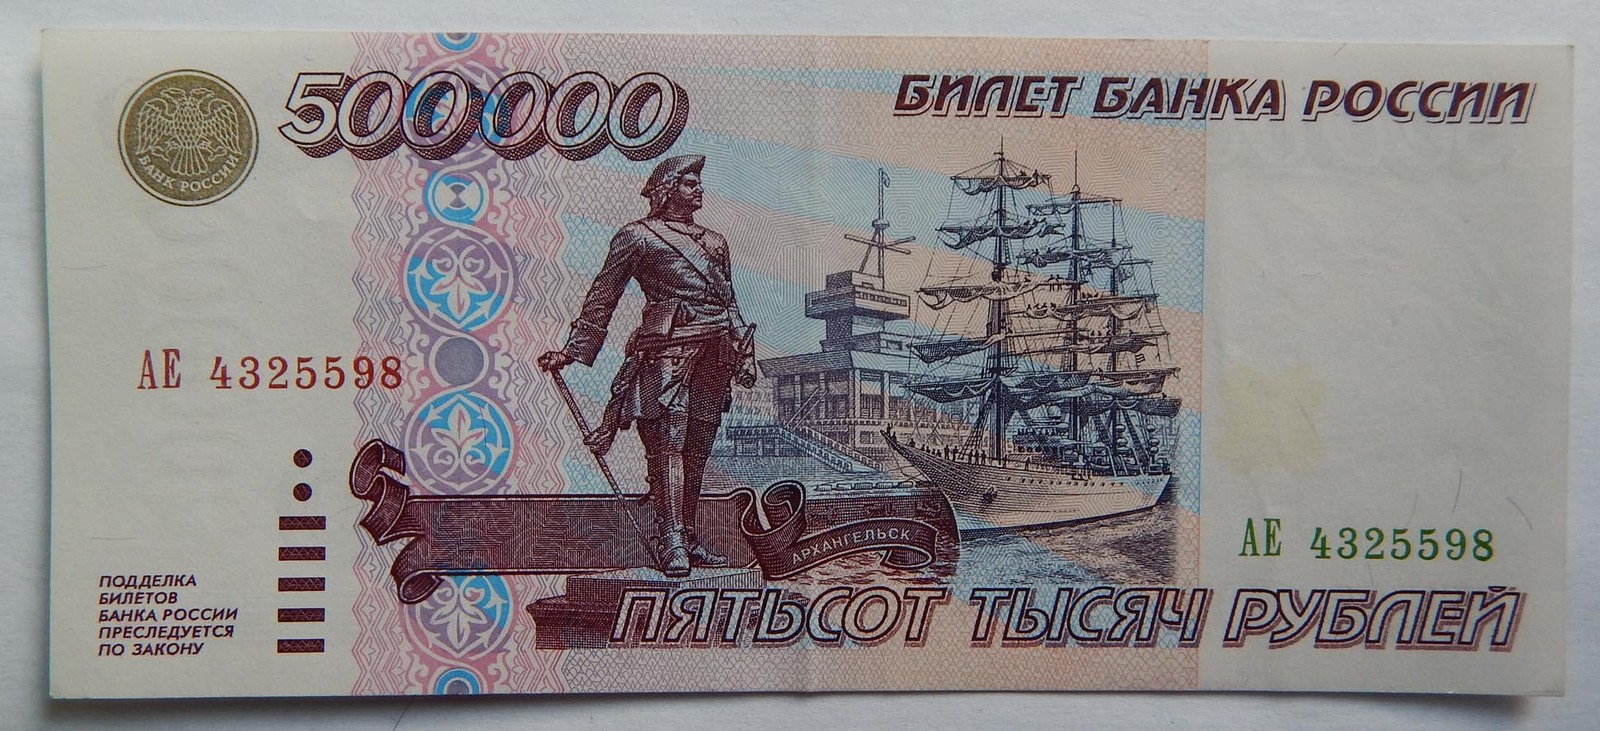 500 т после. Купюра 500 000 рублей 1995 года. Банкнота 500000 рублей 1995. 500 000 Рублей 1995 года. Банкнота 500000 рублей 1995 года.